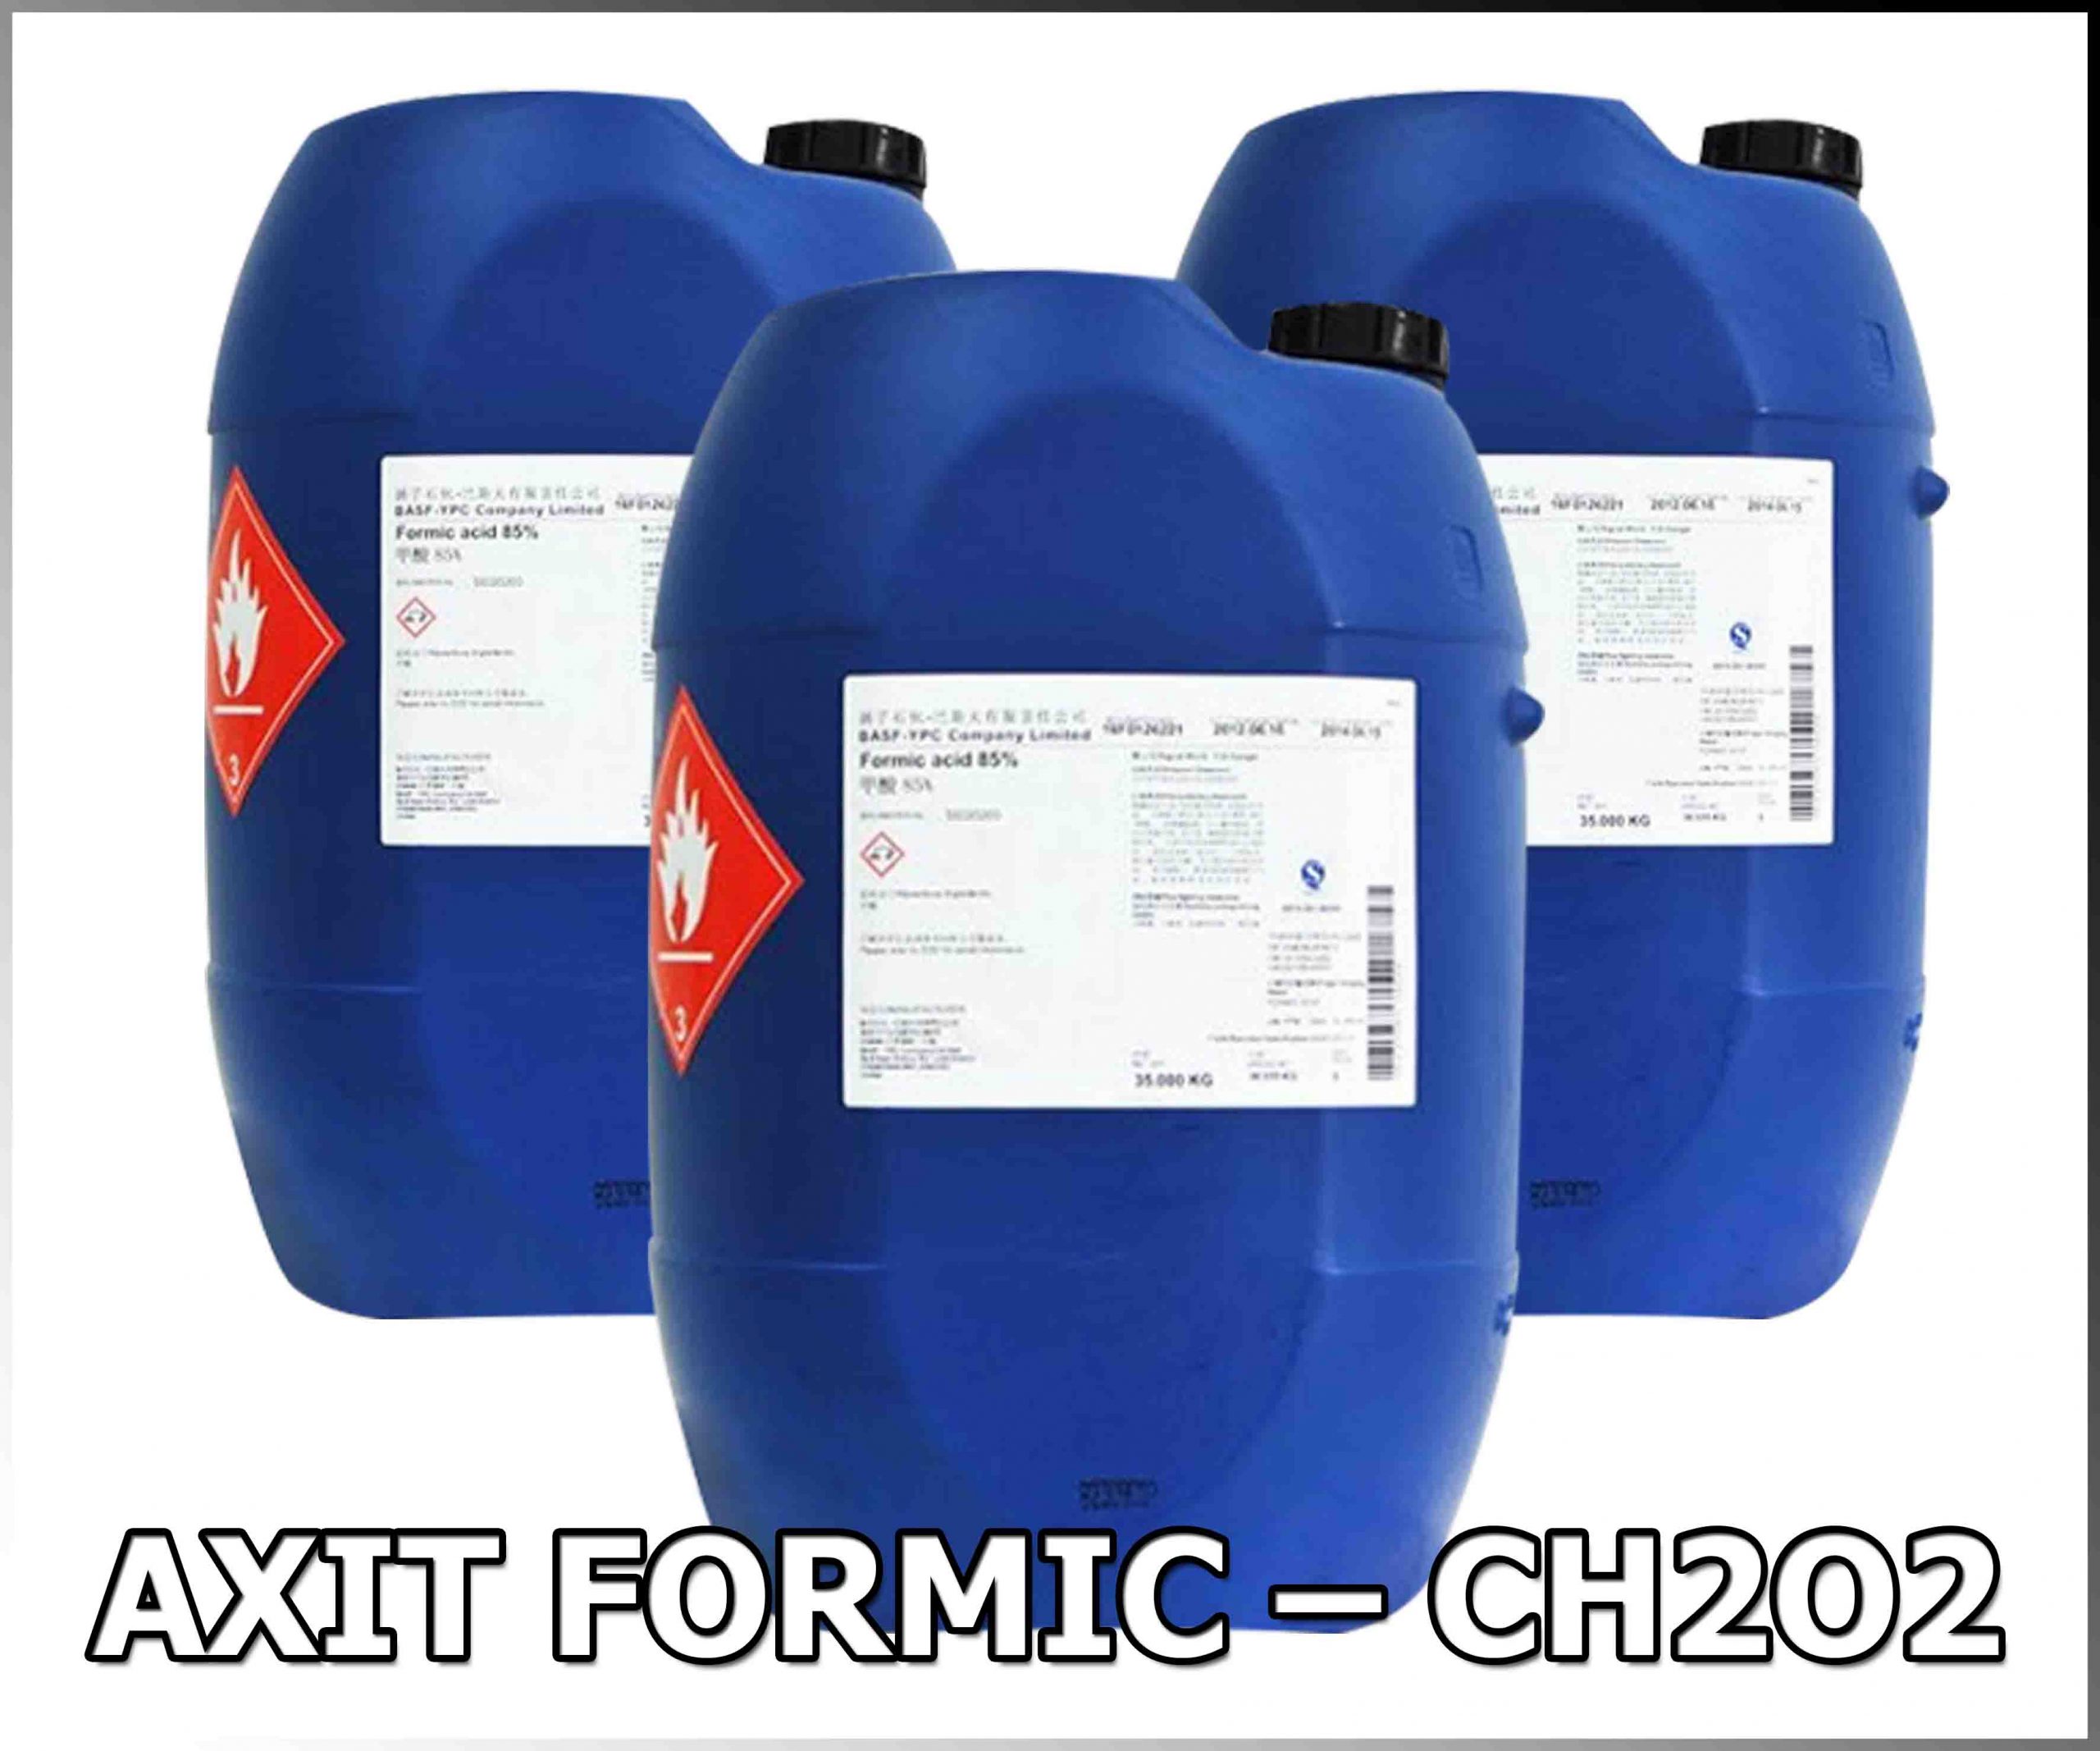 AXIT FORMIC- CH2O2